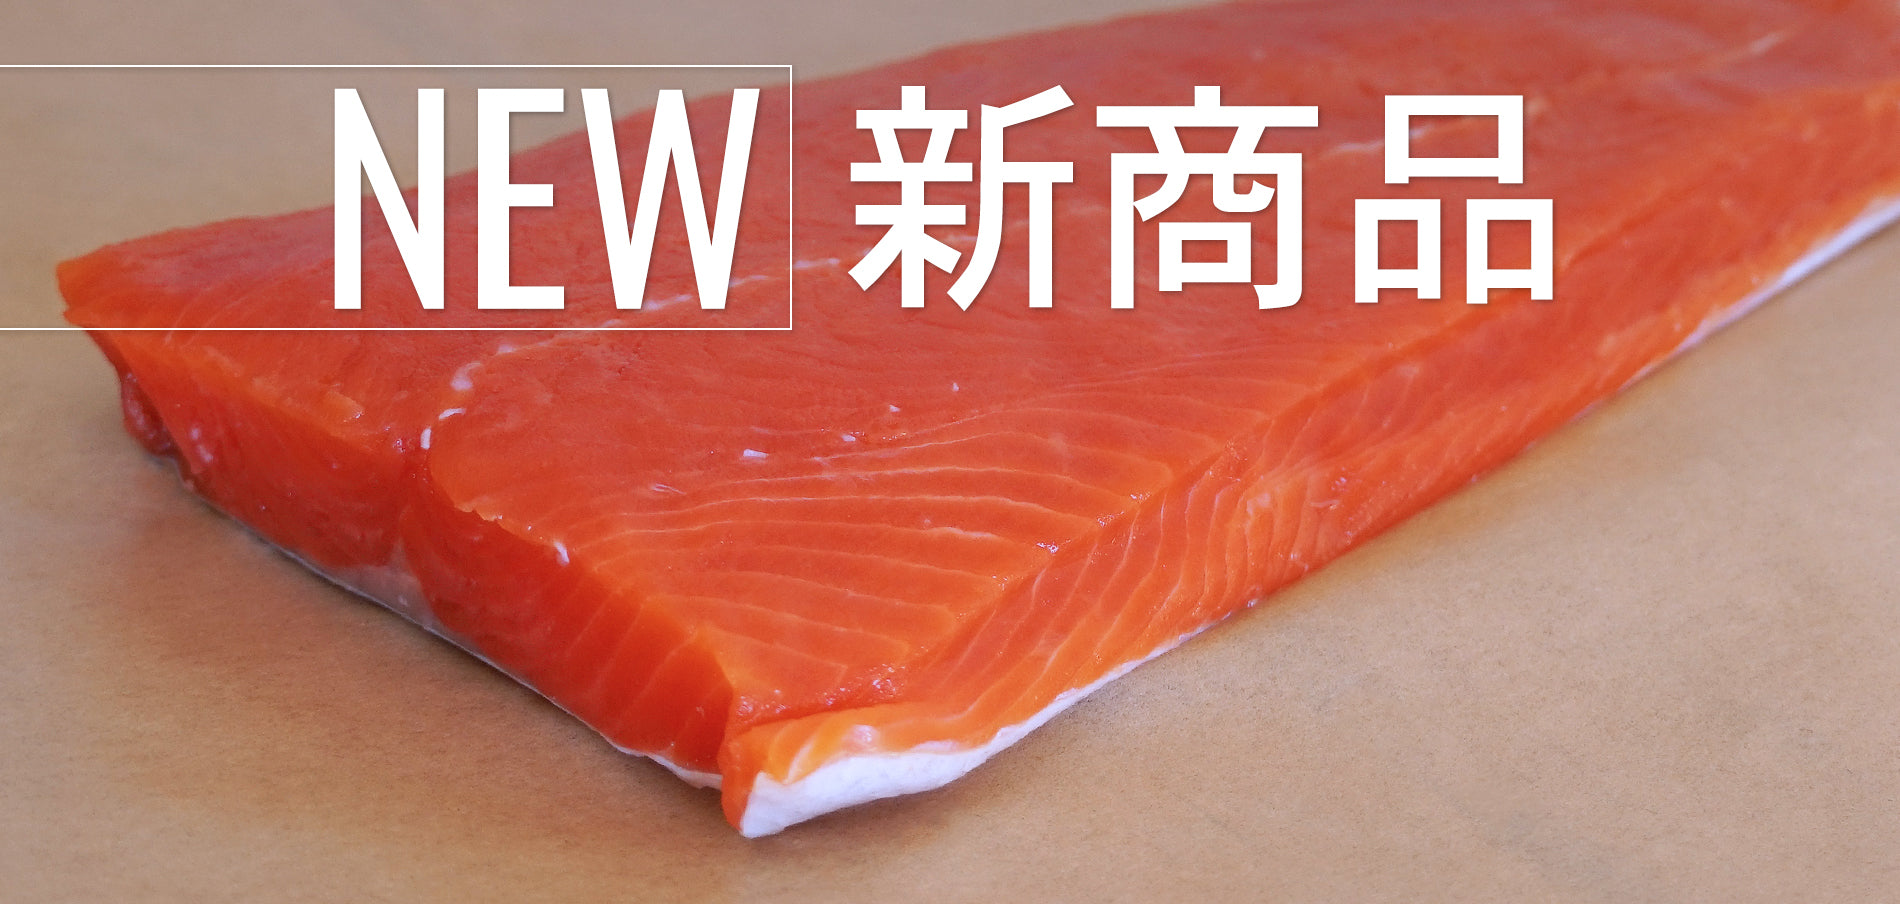 新商品 天然 高級 紅鮭 サーモン 切身 カナダ産